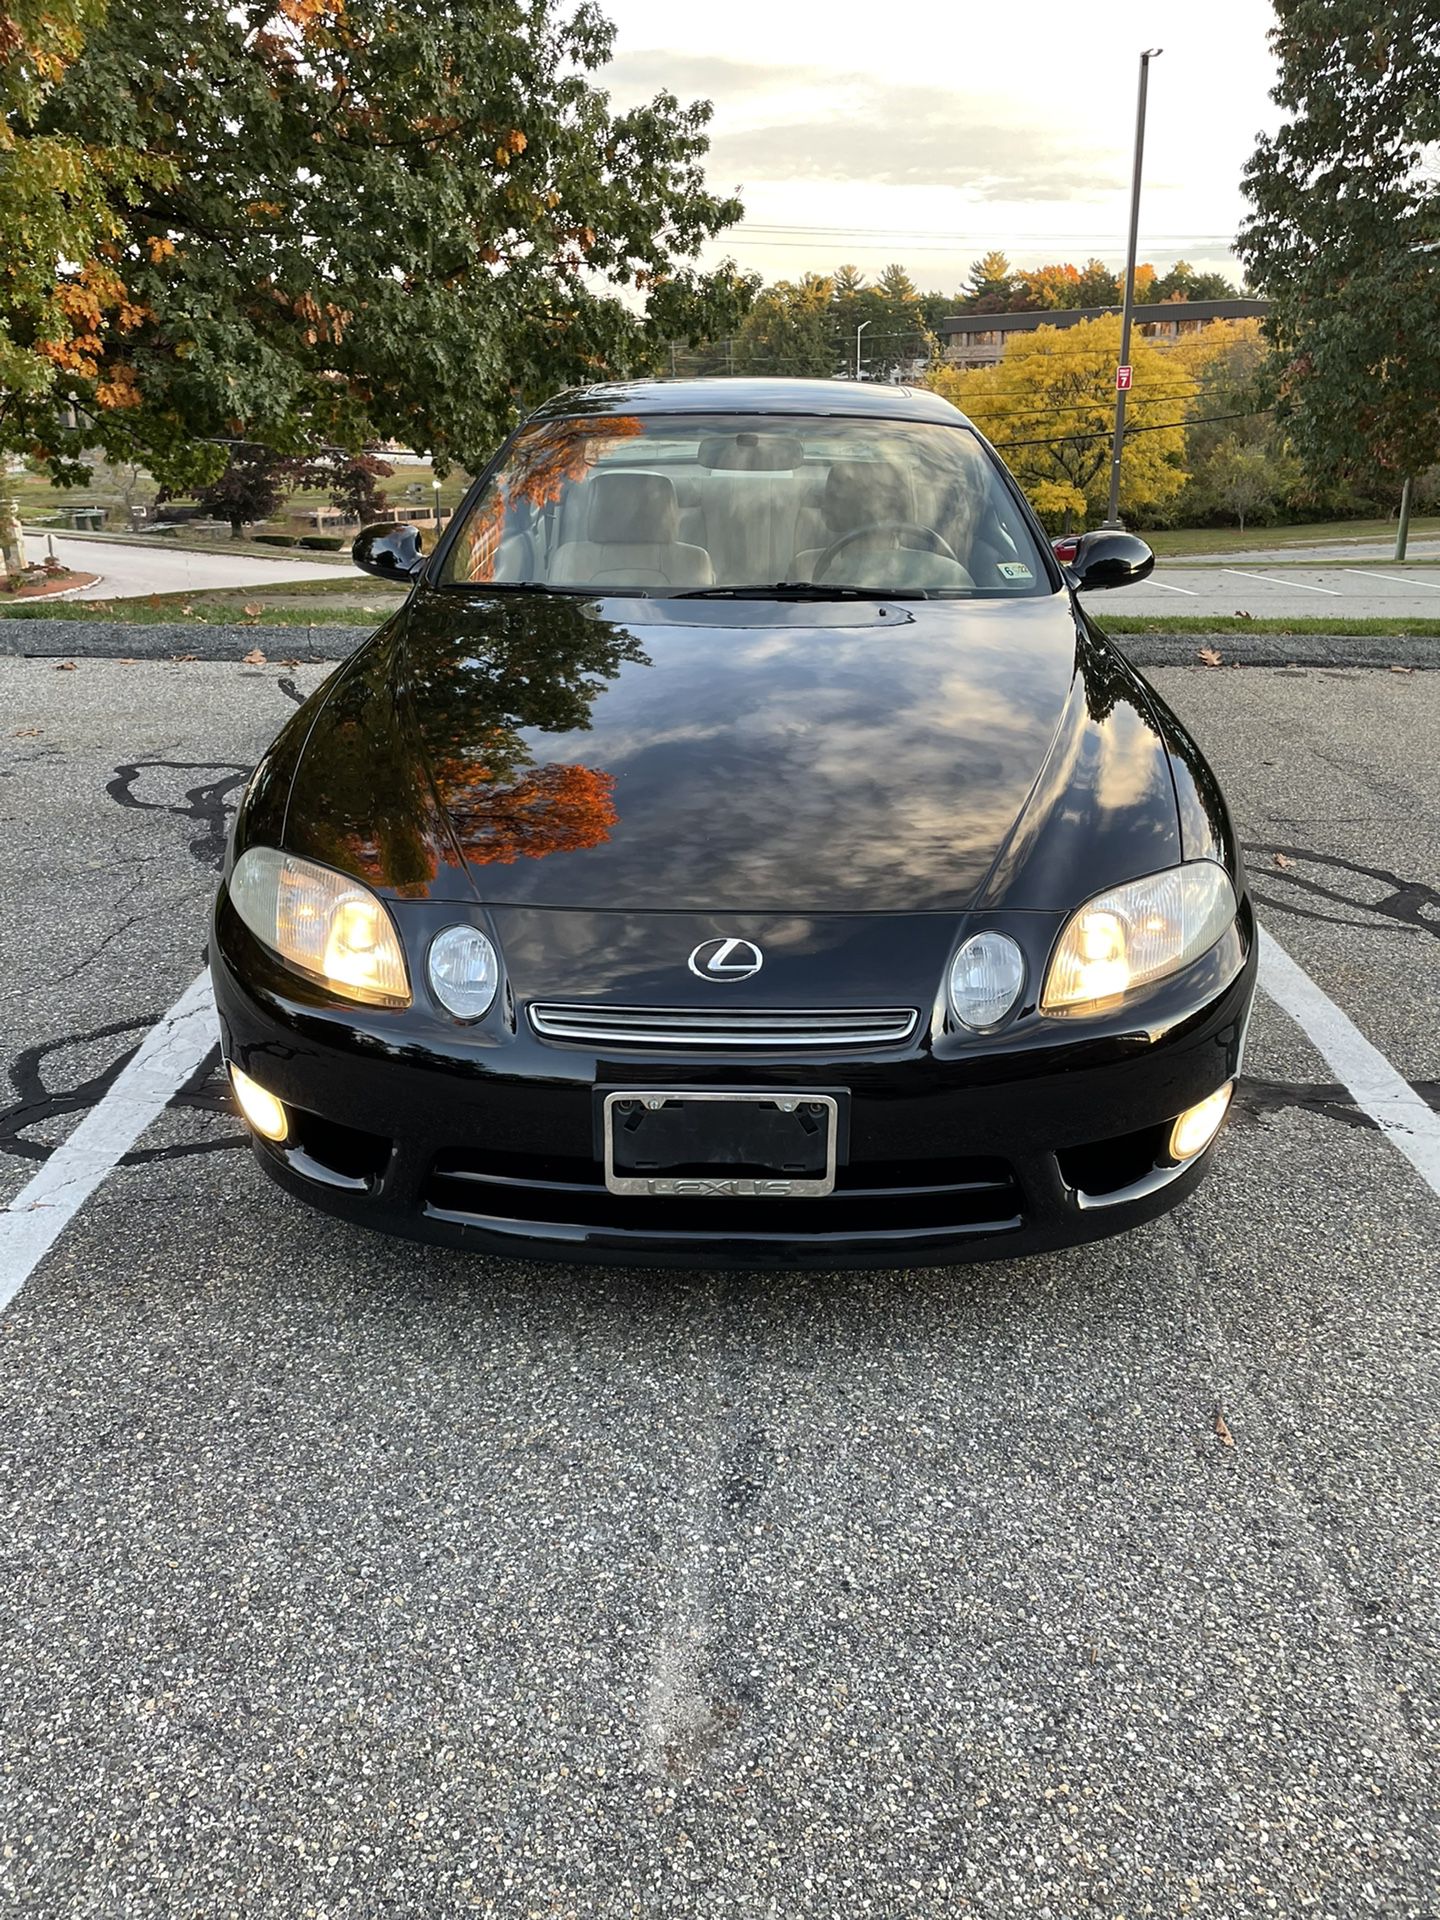 1998 Lexus SC